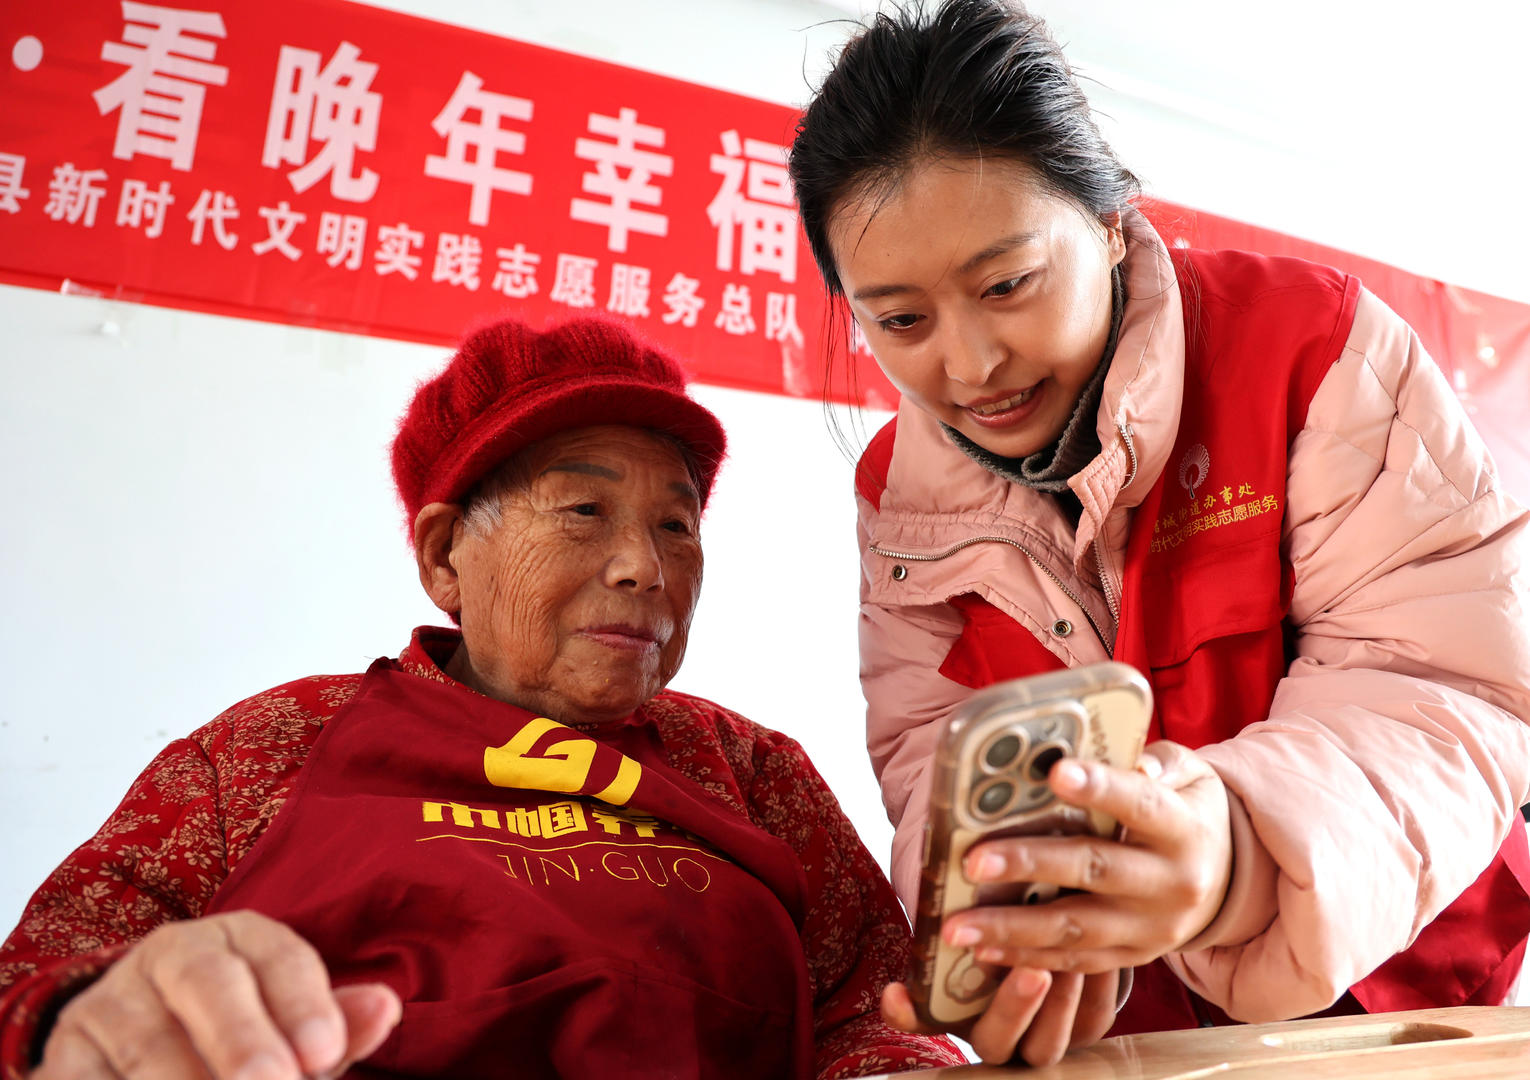 ▲山东滨州一家养老机构内，志愿者教老年人使用智能手机。据视觉中国